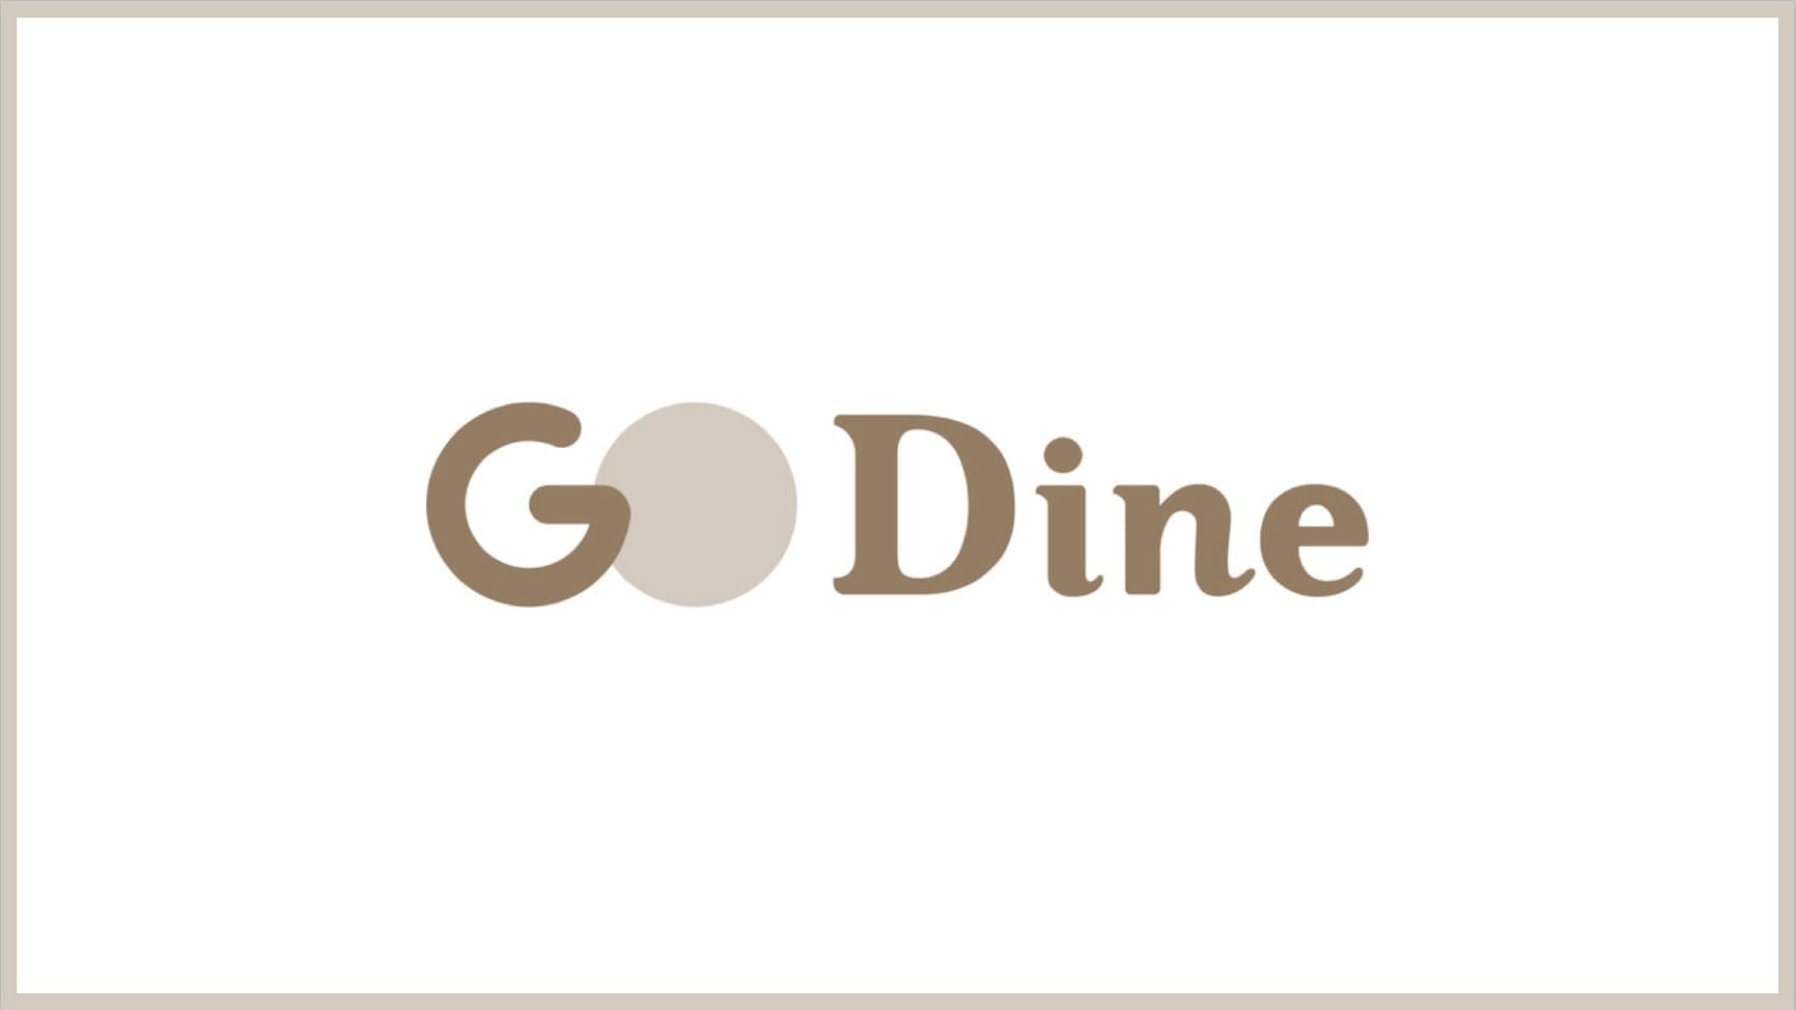 GO Dine（ゴーダイン）の口コミ